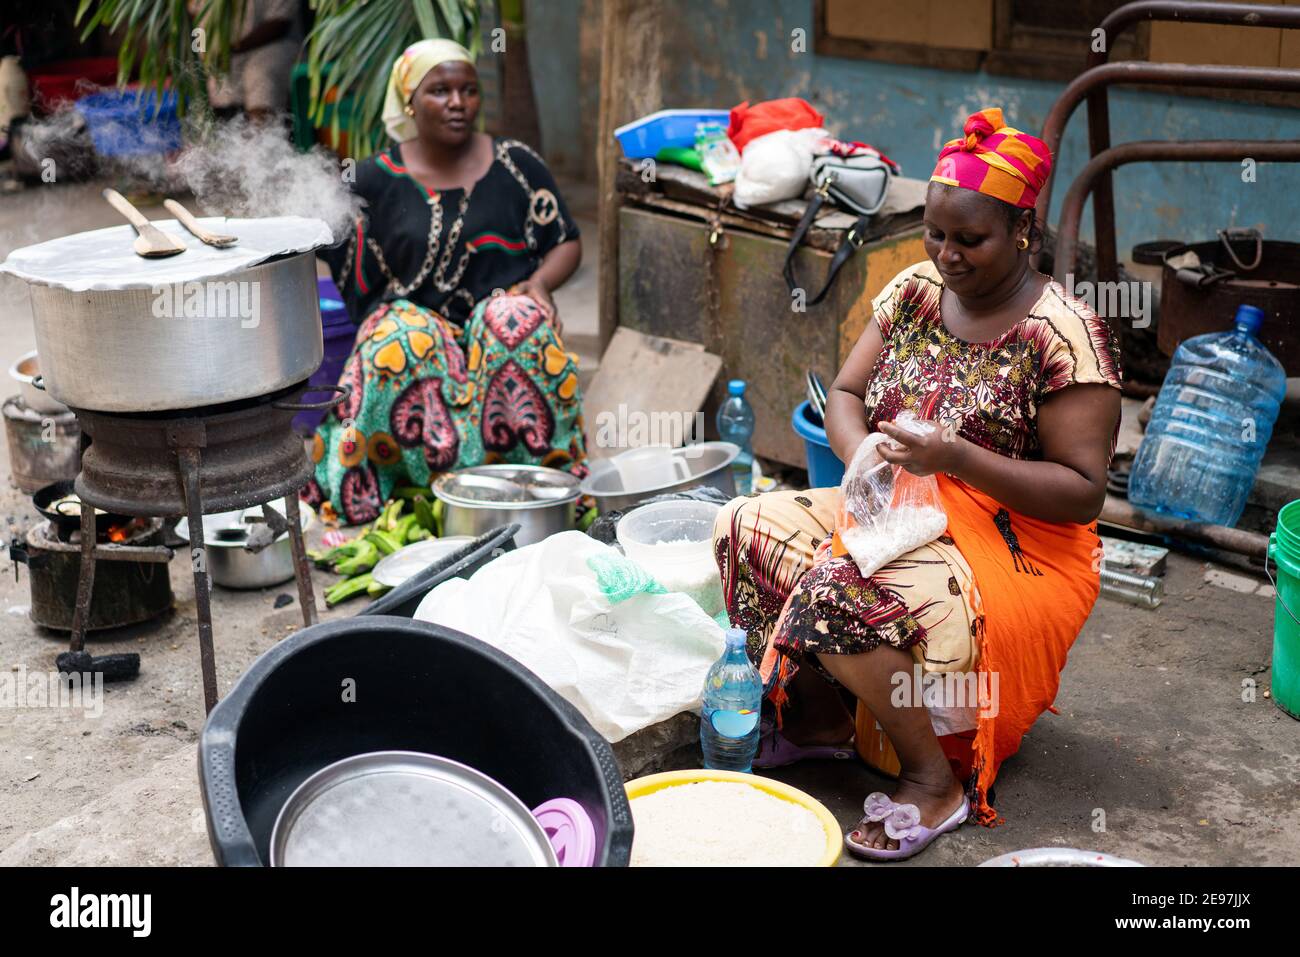 Femme africaine noire cuisant et vendant de la nourriture de rue Banque D'Images